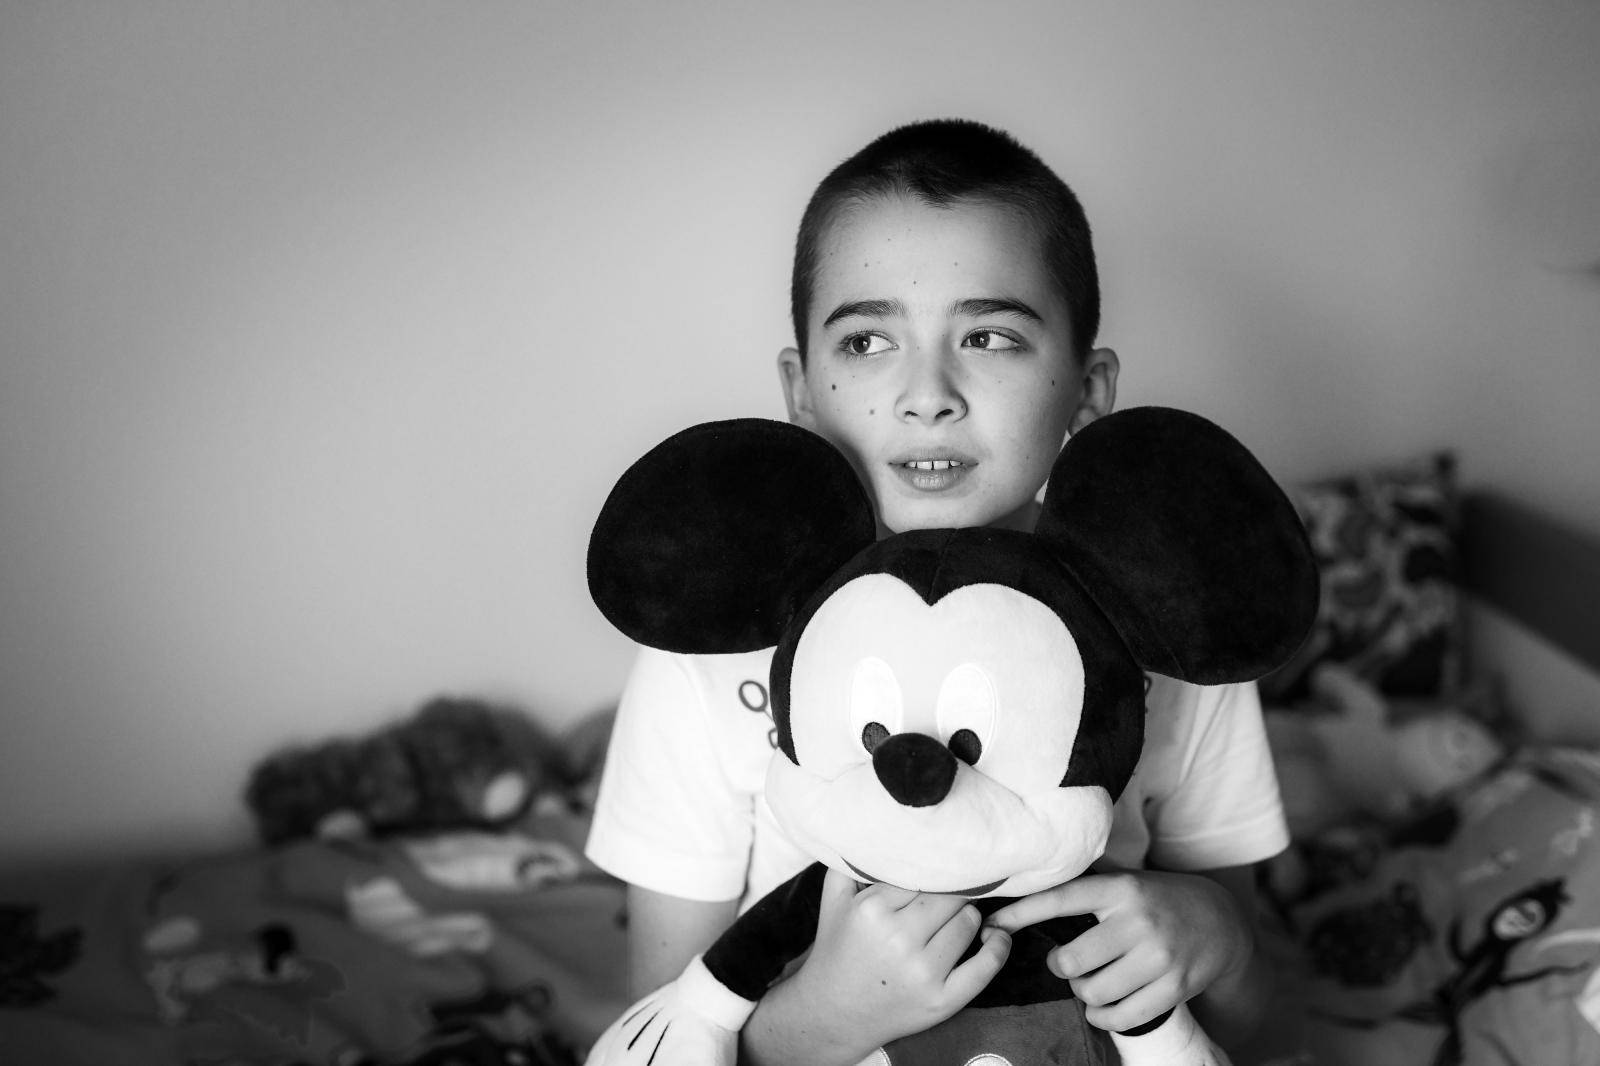 Ivano ima 12 godina, ide u peti razred, ima bijele tenisice, bicikl i Mickeyja Mousea. I autizam